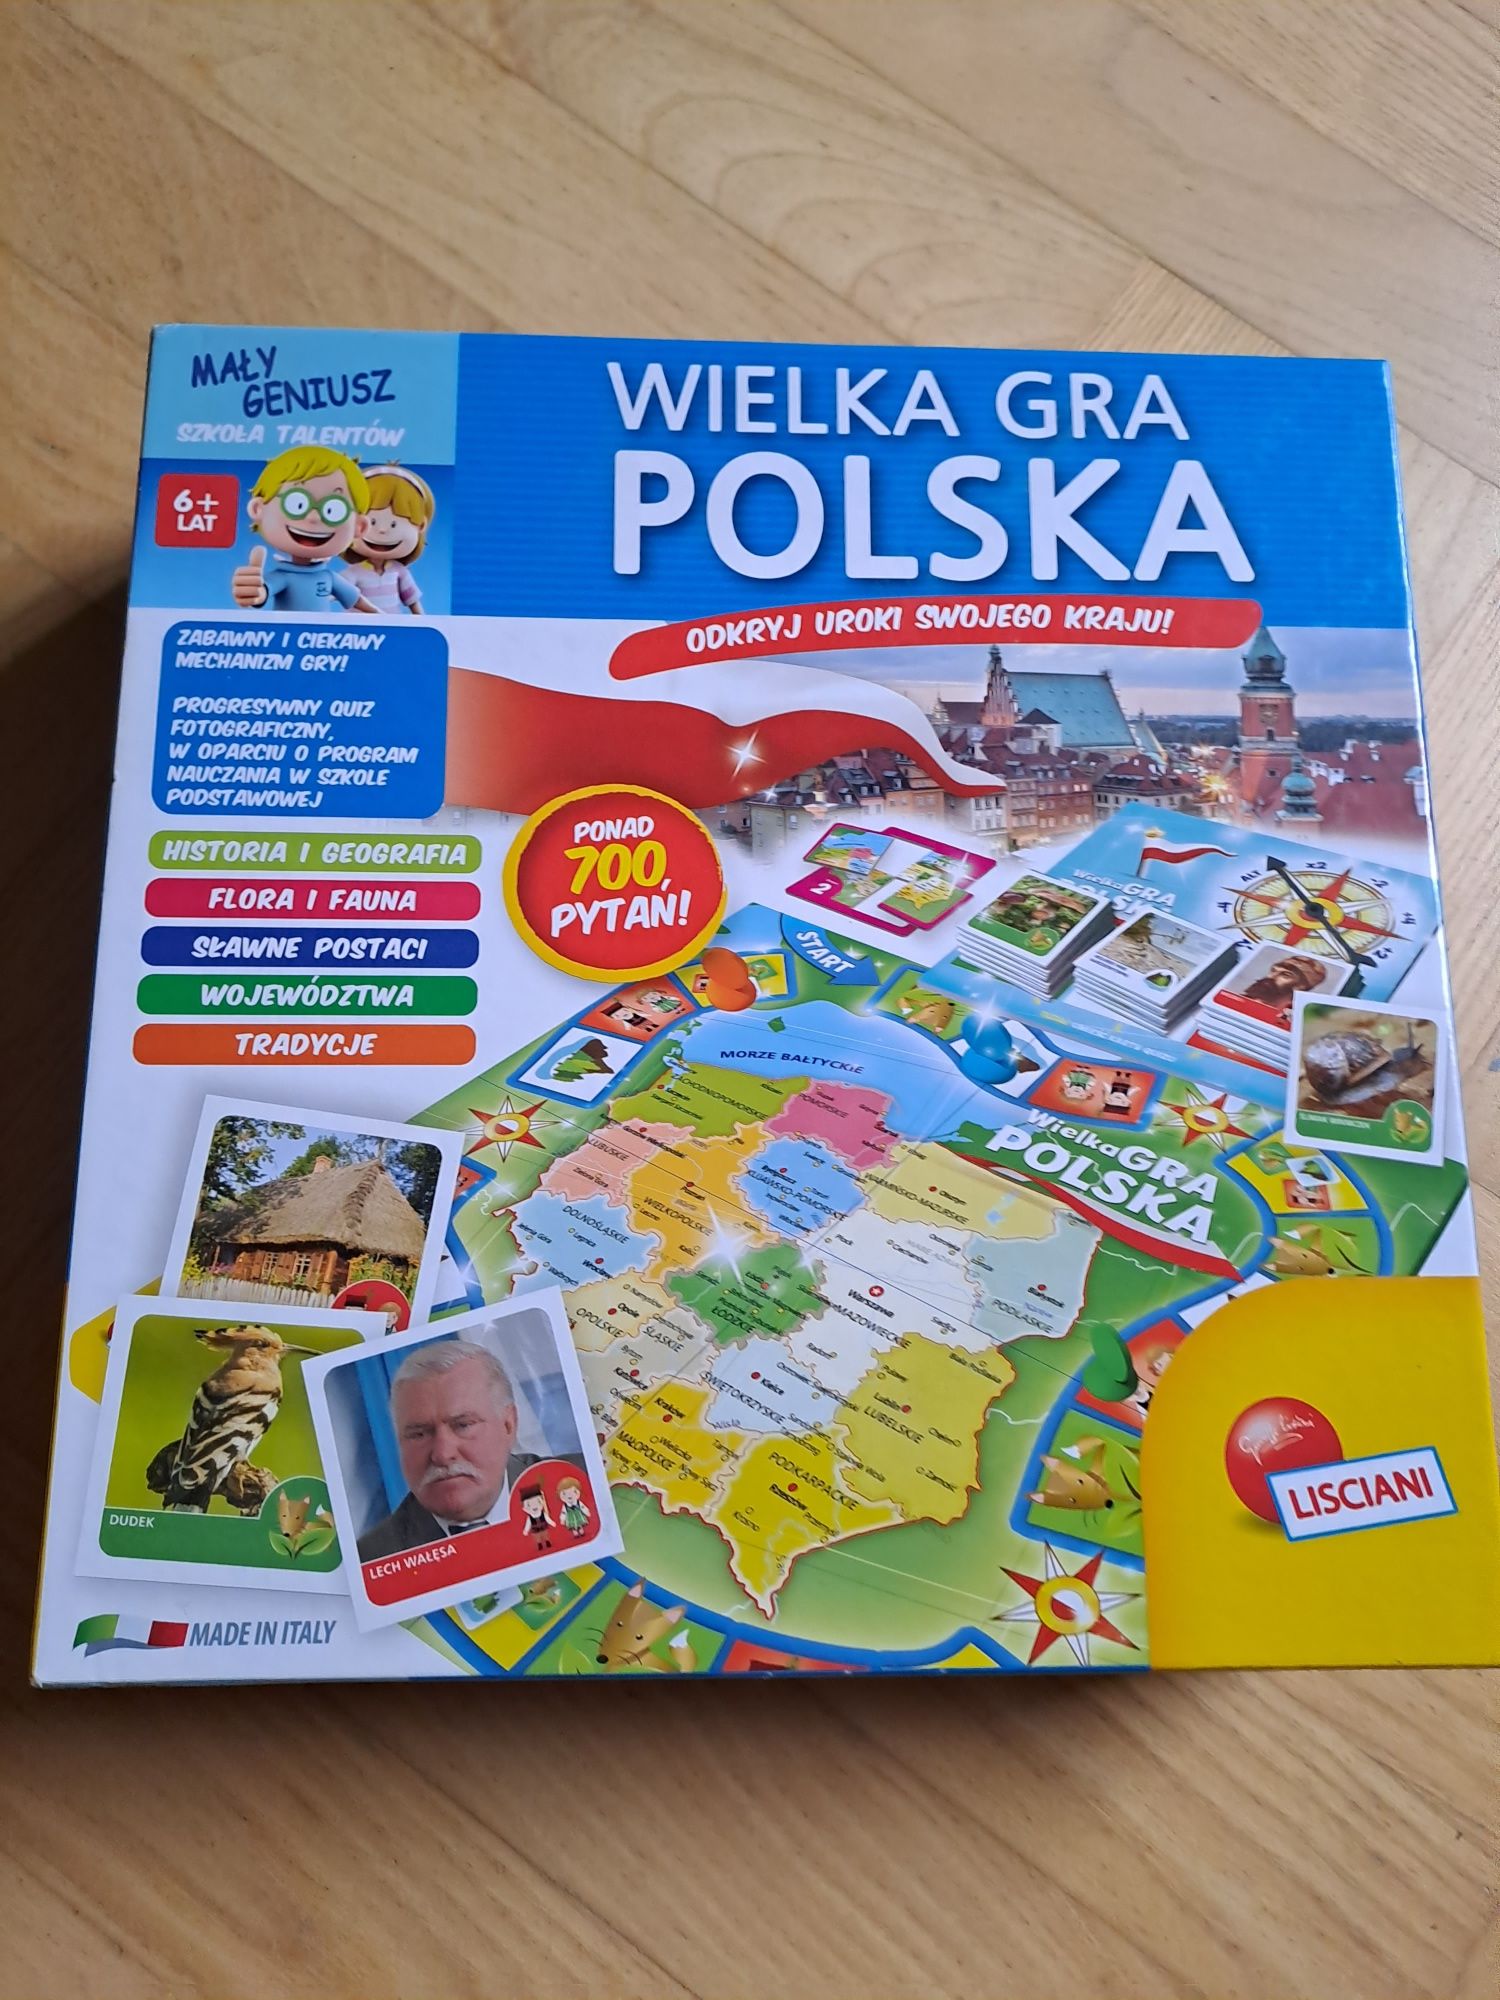 Wielka gra polska